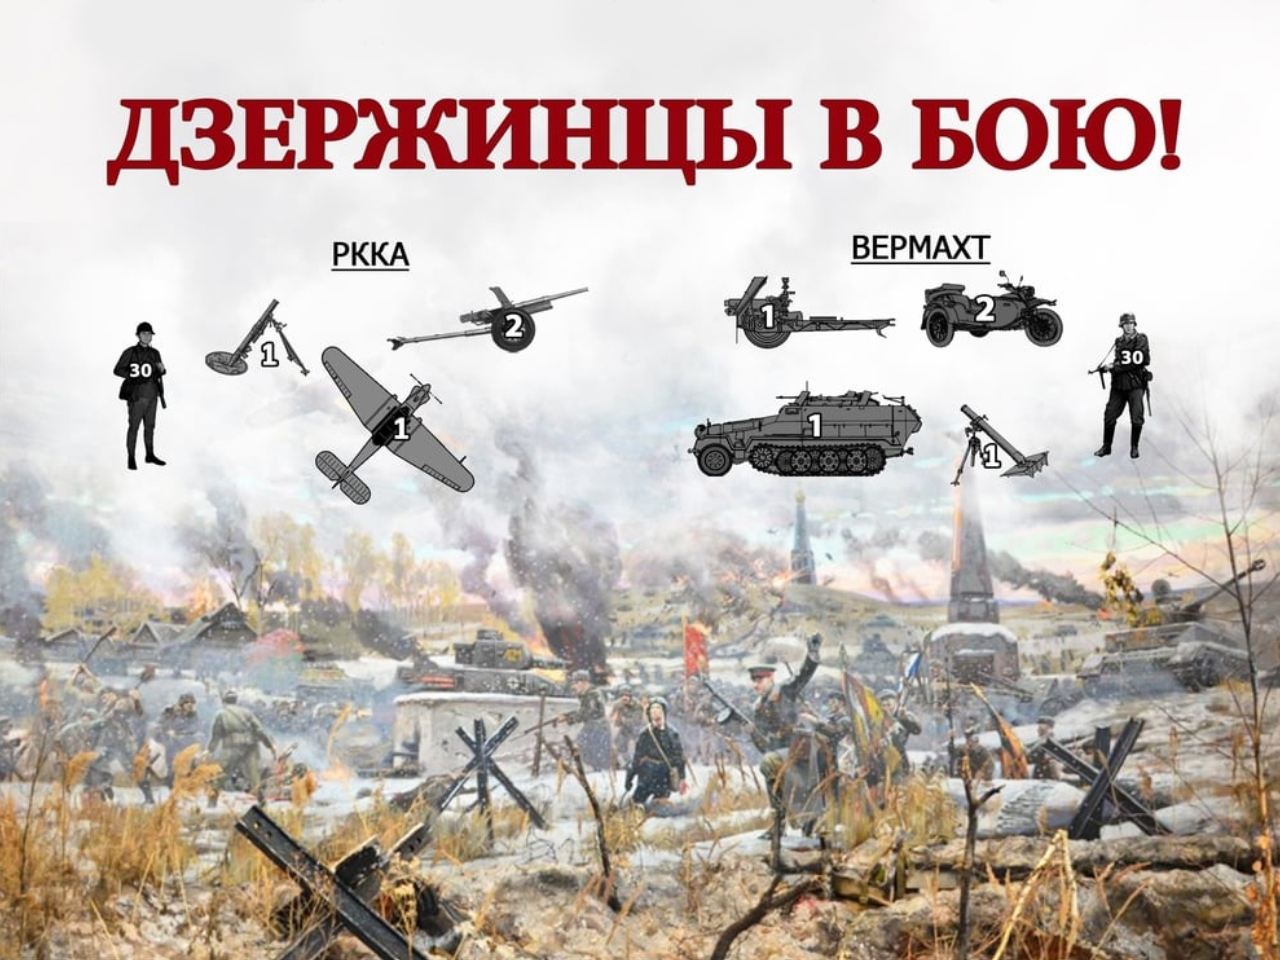 Эпизод битвы за Москву с участием батальонов НКВД